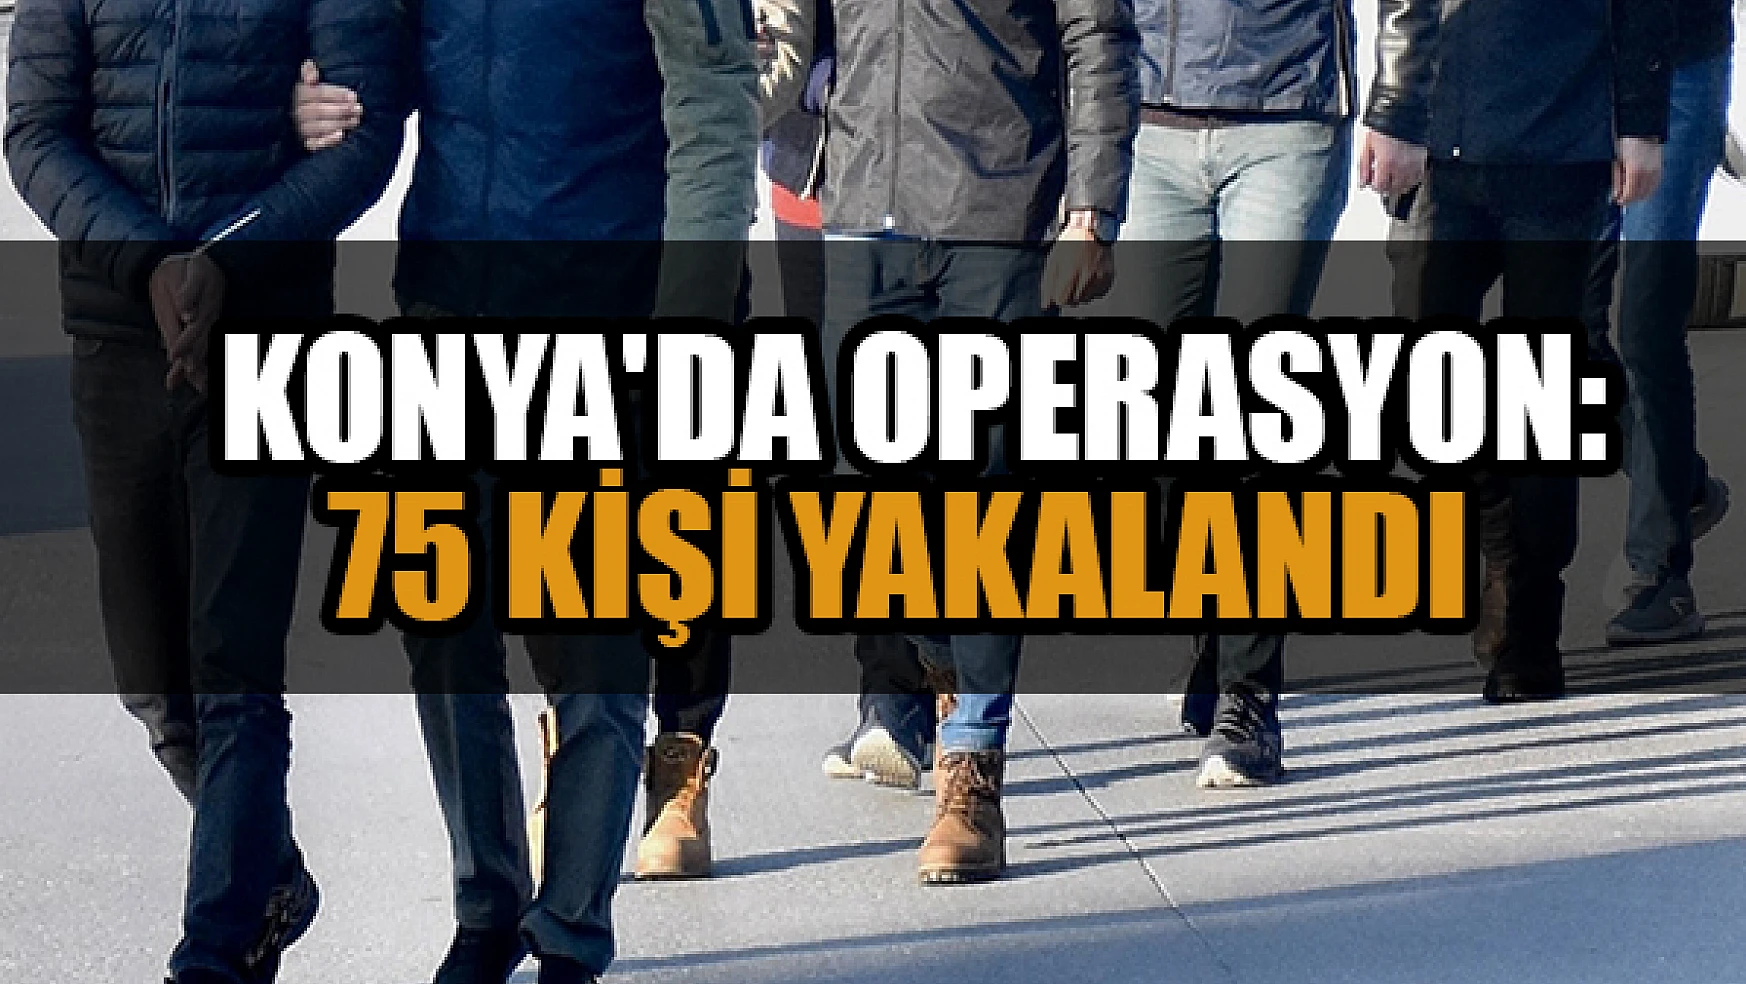  Konya'da operasyon:  75 kişi yakalandı